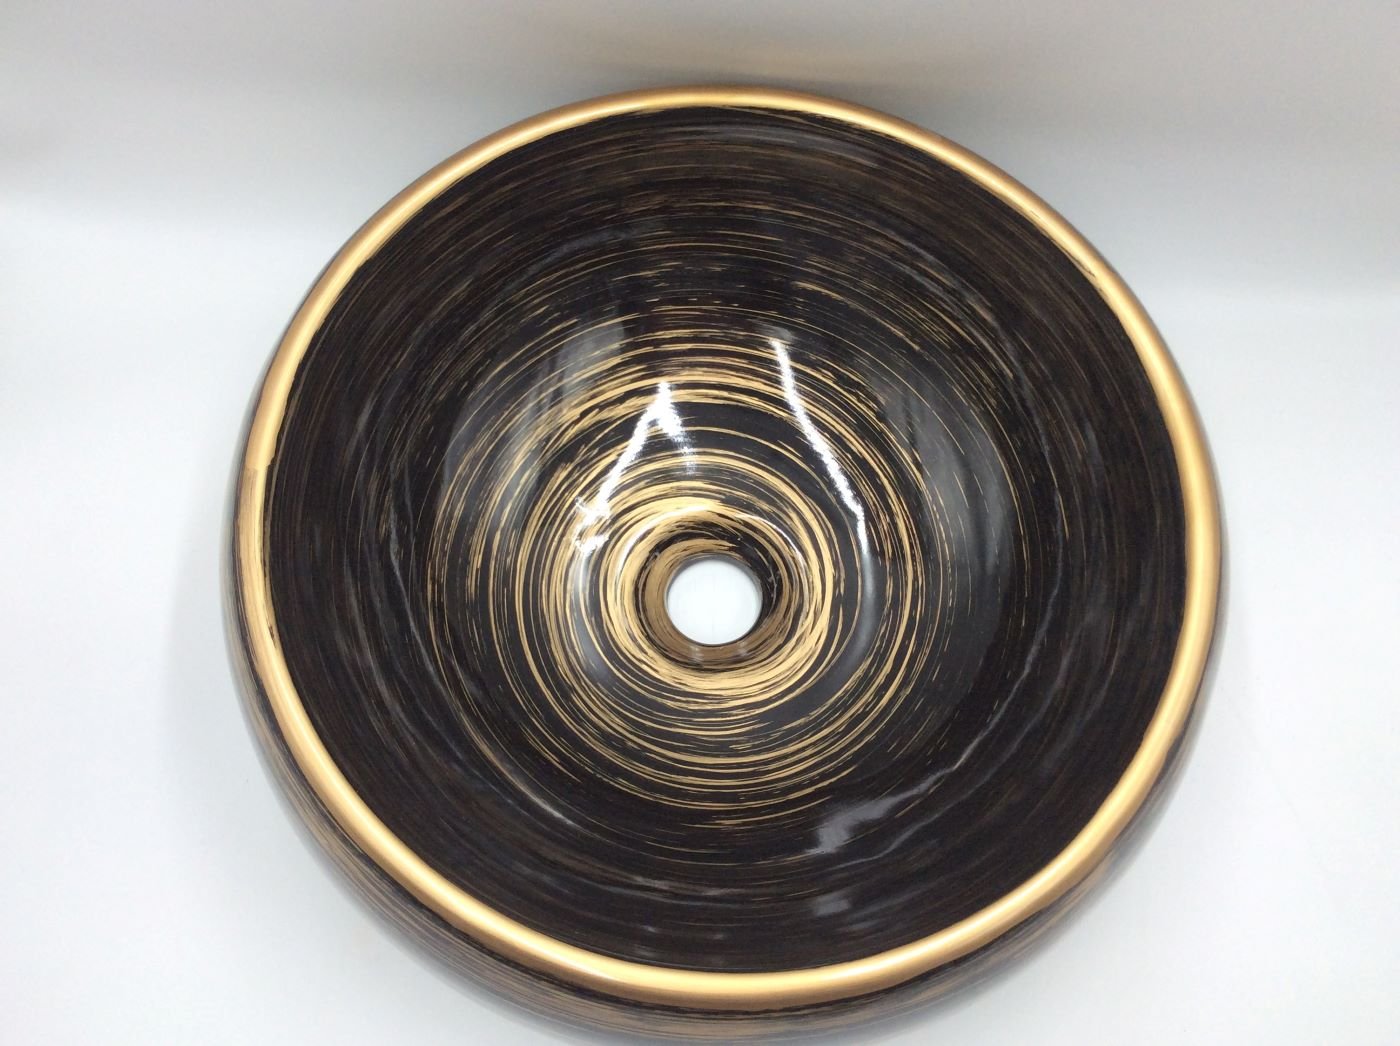 Lavabo Cerámico para Baño COZ- CO, forma circular color negro con detalles en tono cobrizo. De sobreponer, con diseño europeo ideal para todo tipo de baños. Dimensiones 40.0 x 40.0 x 14.5 cms. (base x altura x profundidad)